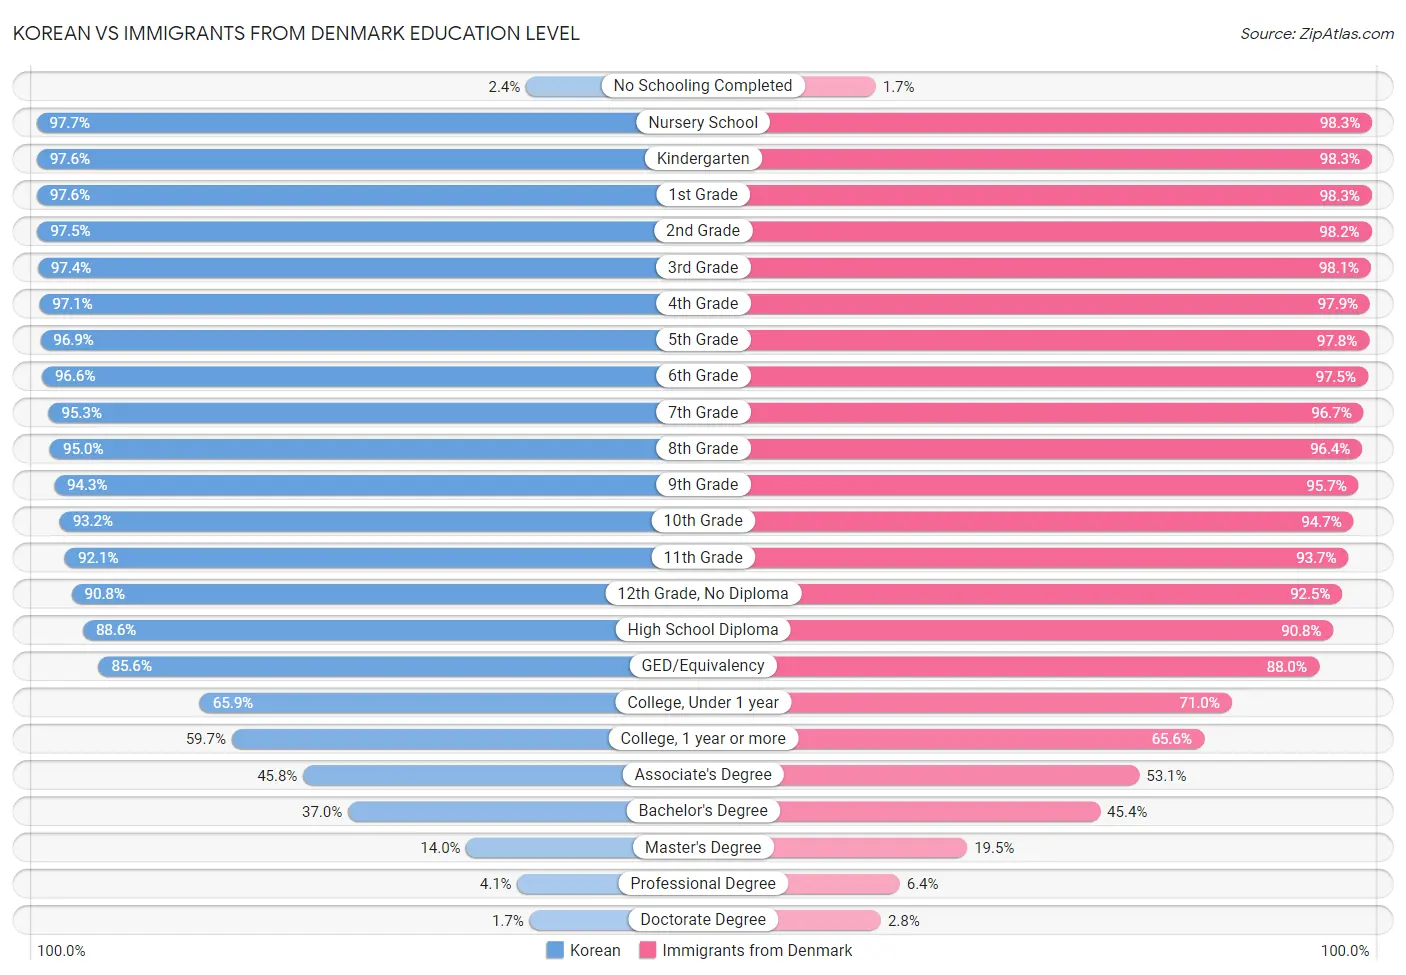 Korean vs Immigrants from Denmark Education Level